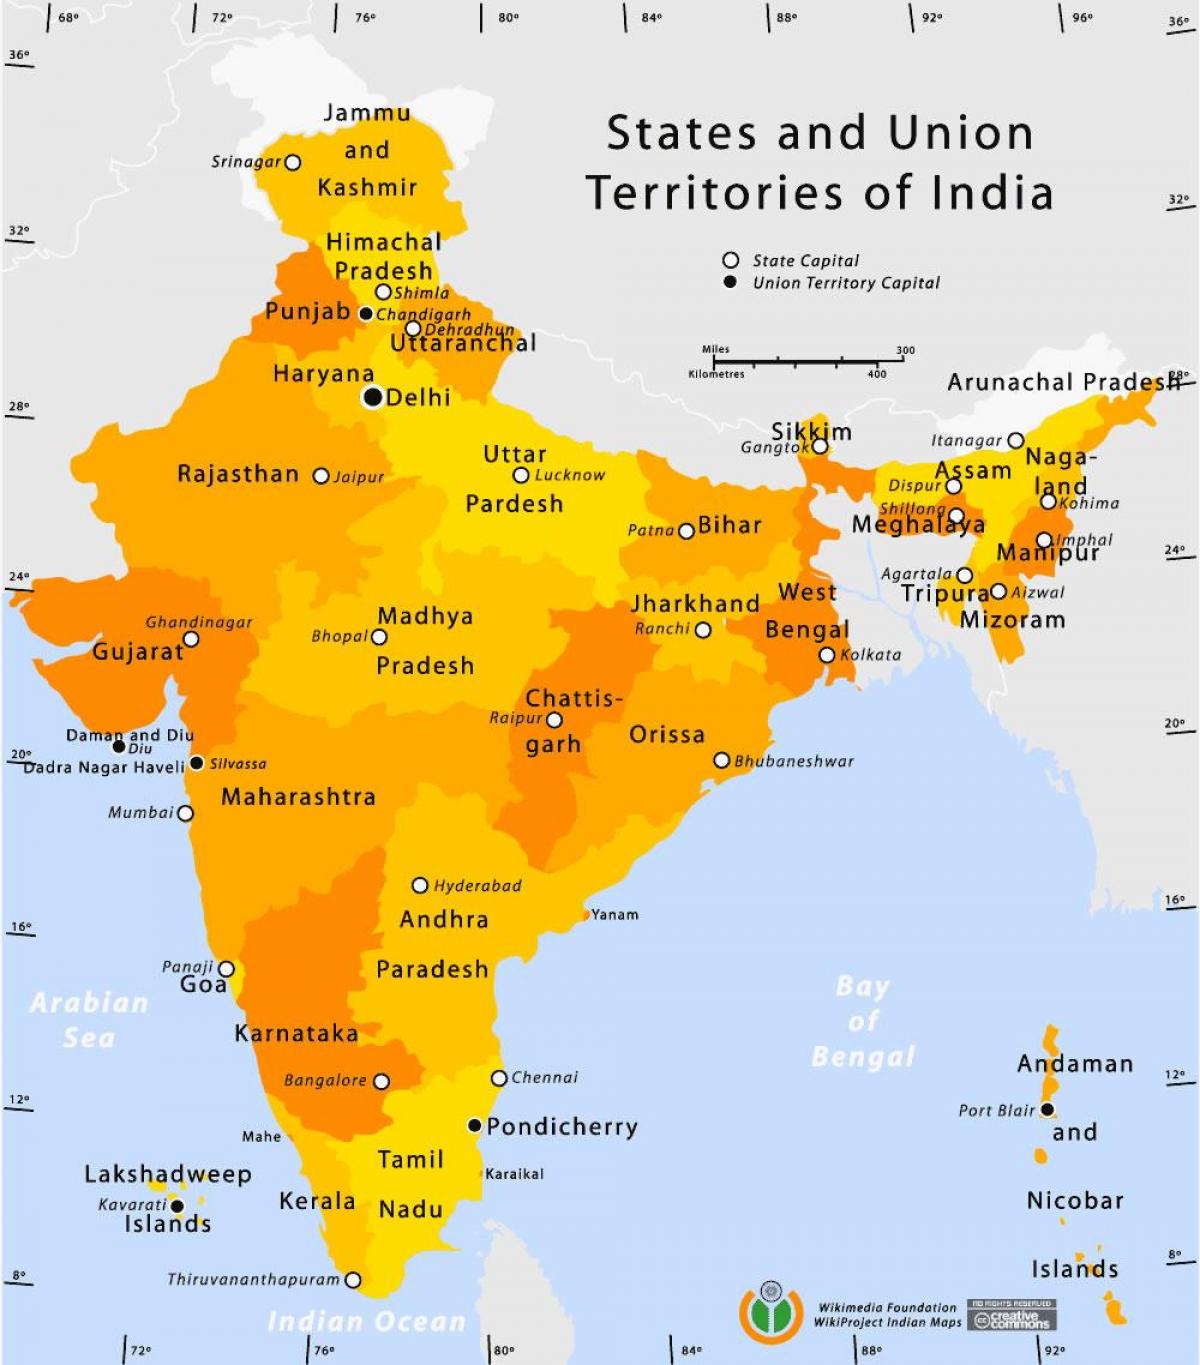 les territoires de l'union de l'Inde sur la carte